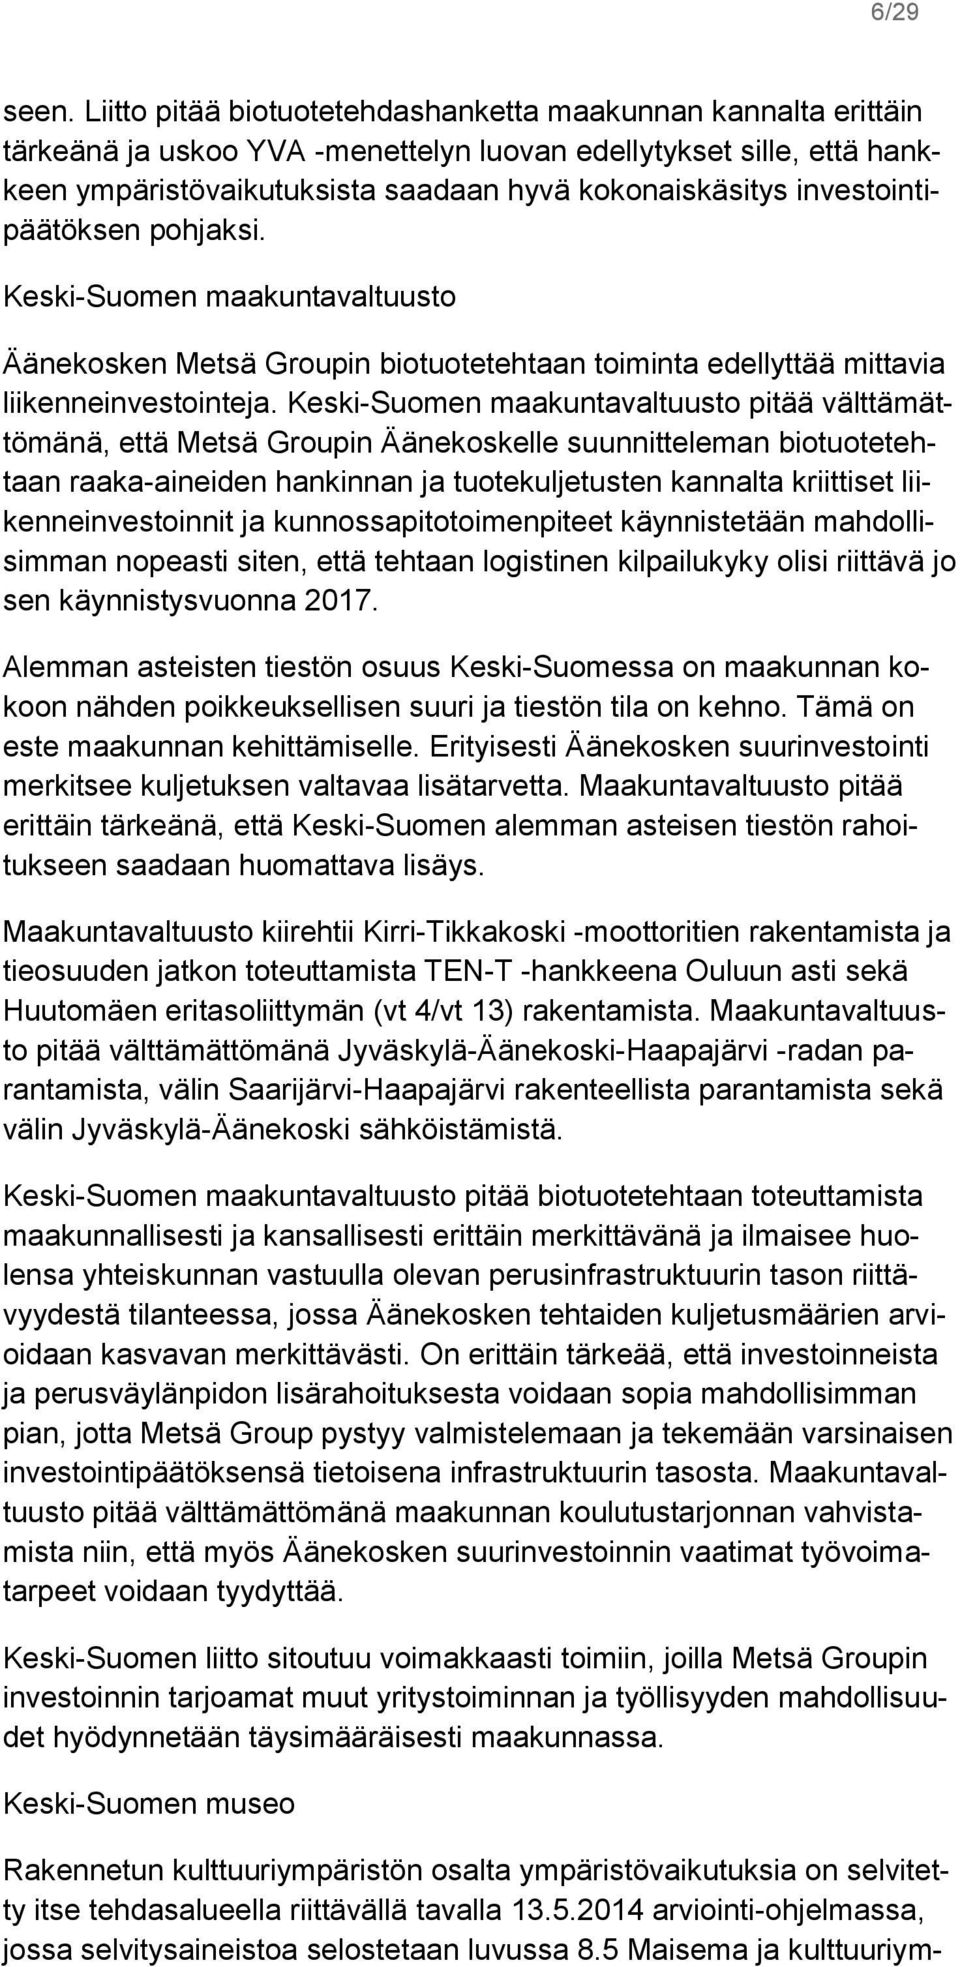 investointipäätöksen pohjaksi. Keski-Suomen maakuntavaltuusto Äänekosken Metsä Groupin biotuotetehtaan toiminta edellyttää mittavia liikenneinvestointeja.